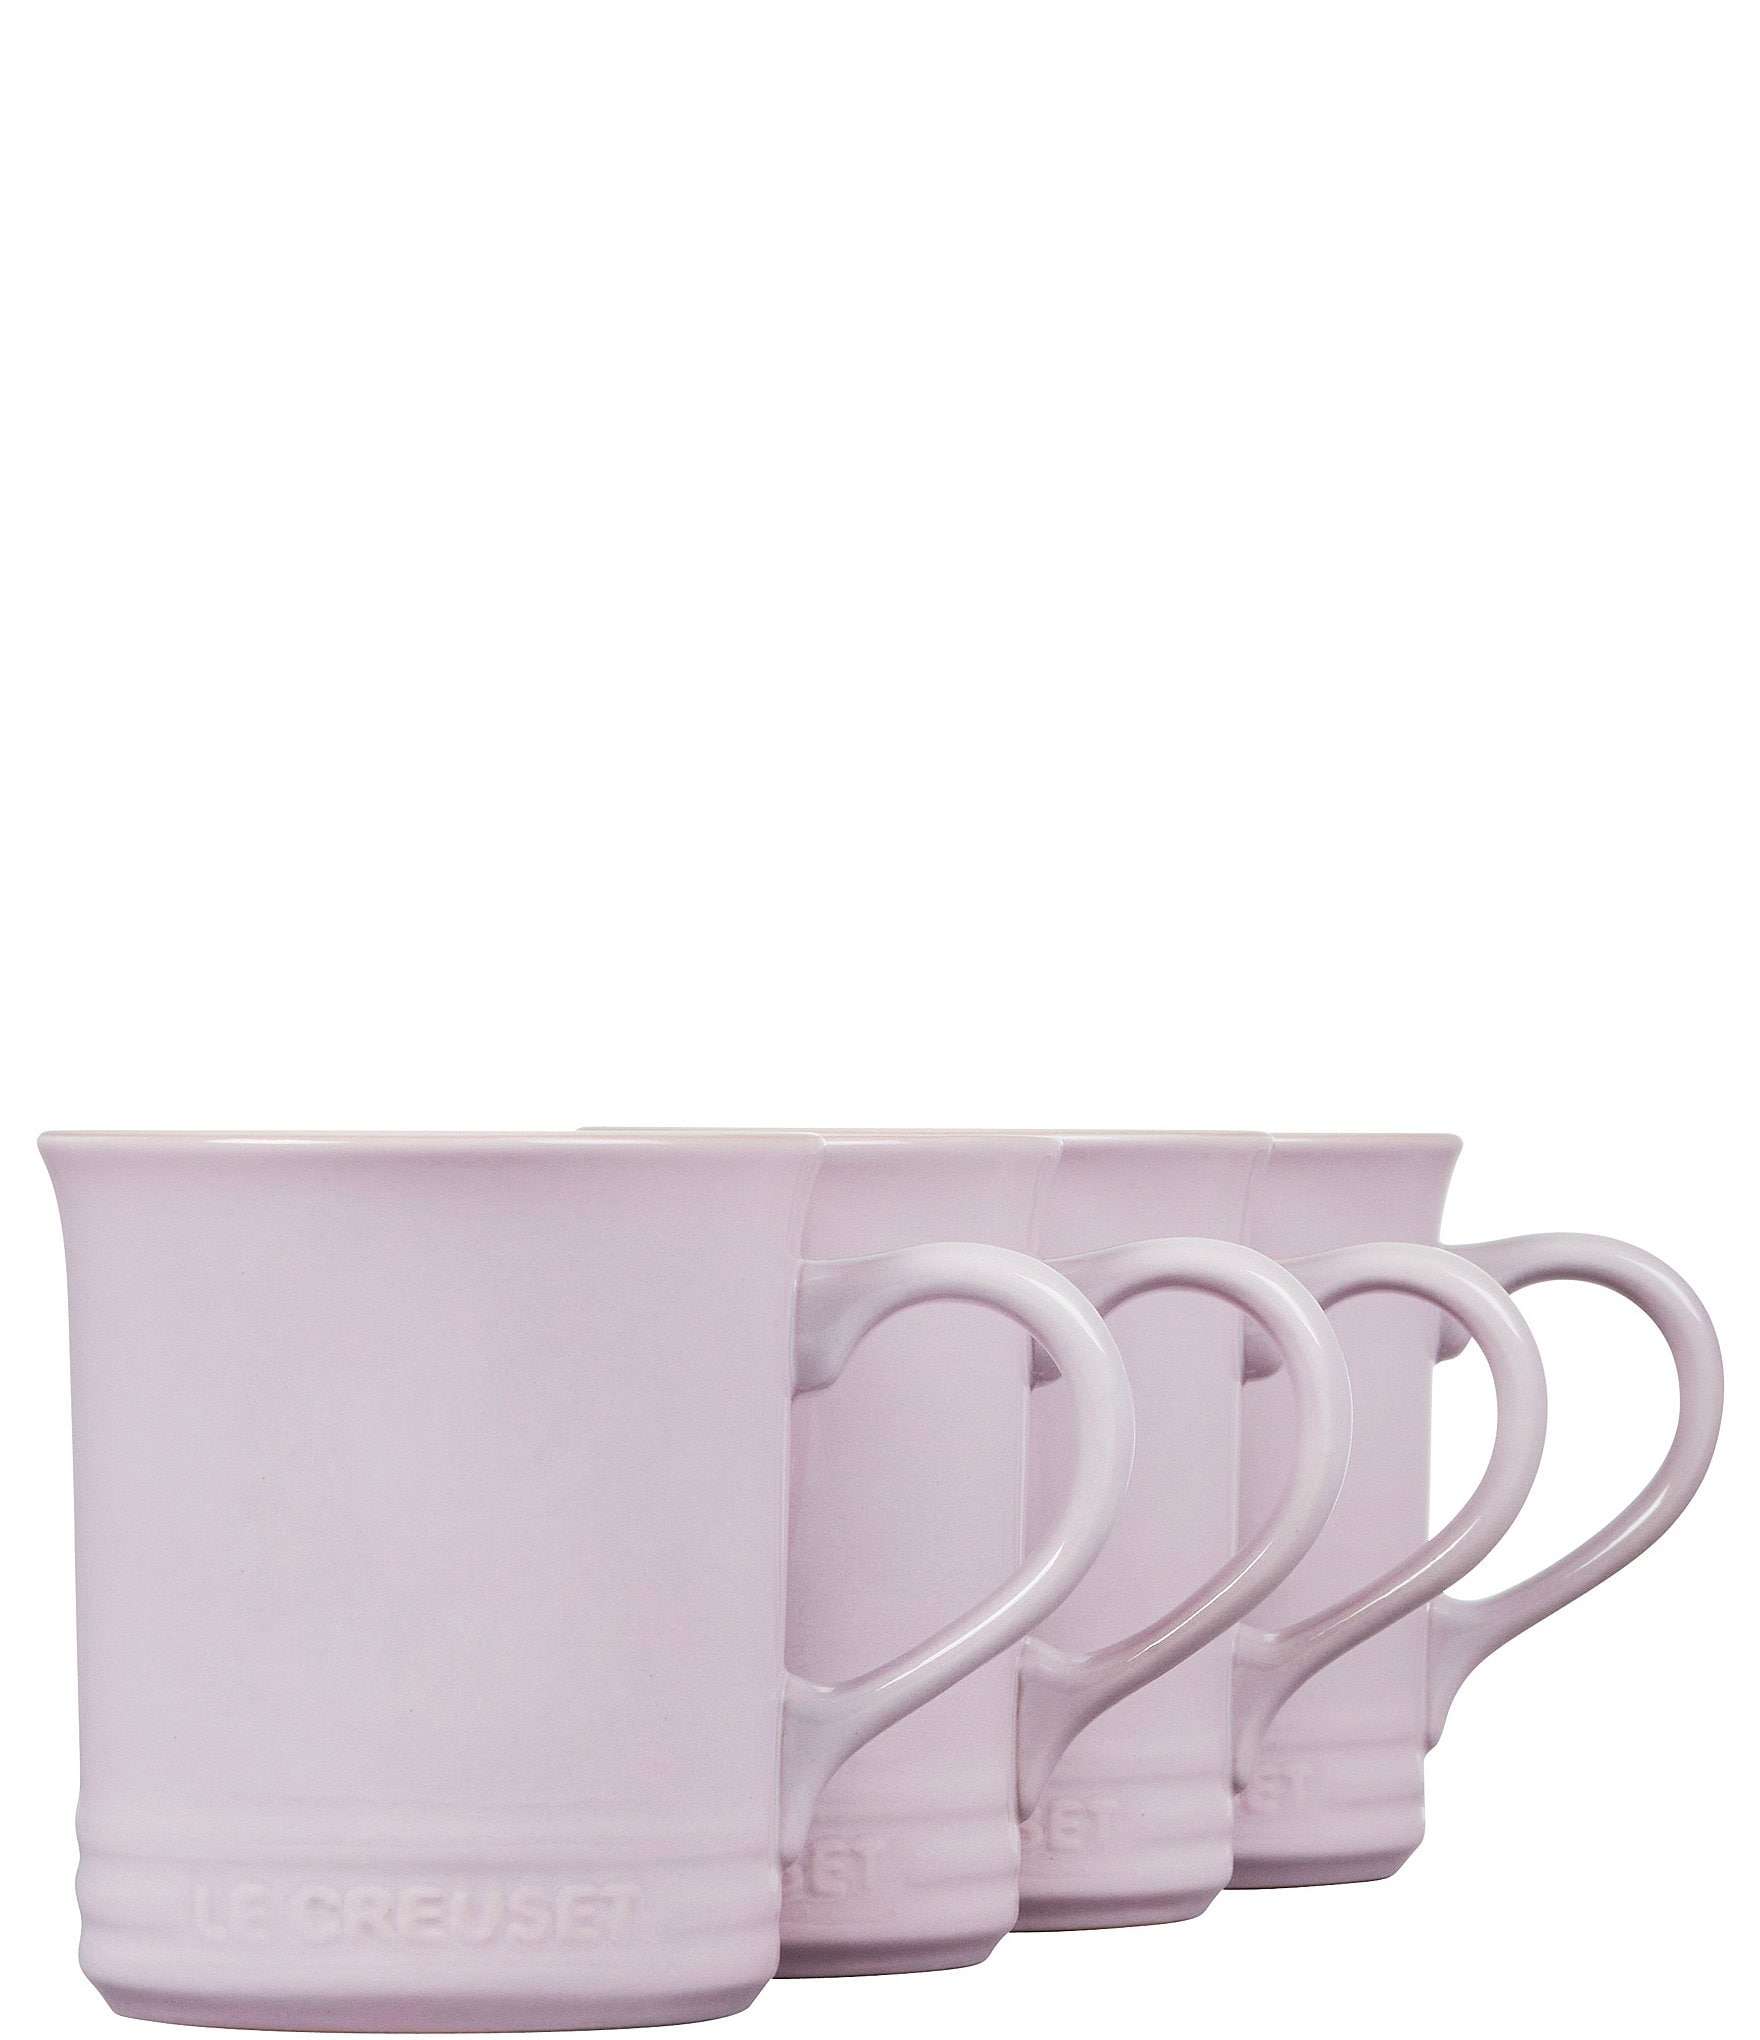 Le Creuset Stoneware Mugs Set of 4 - Licorice